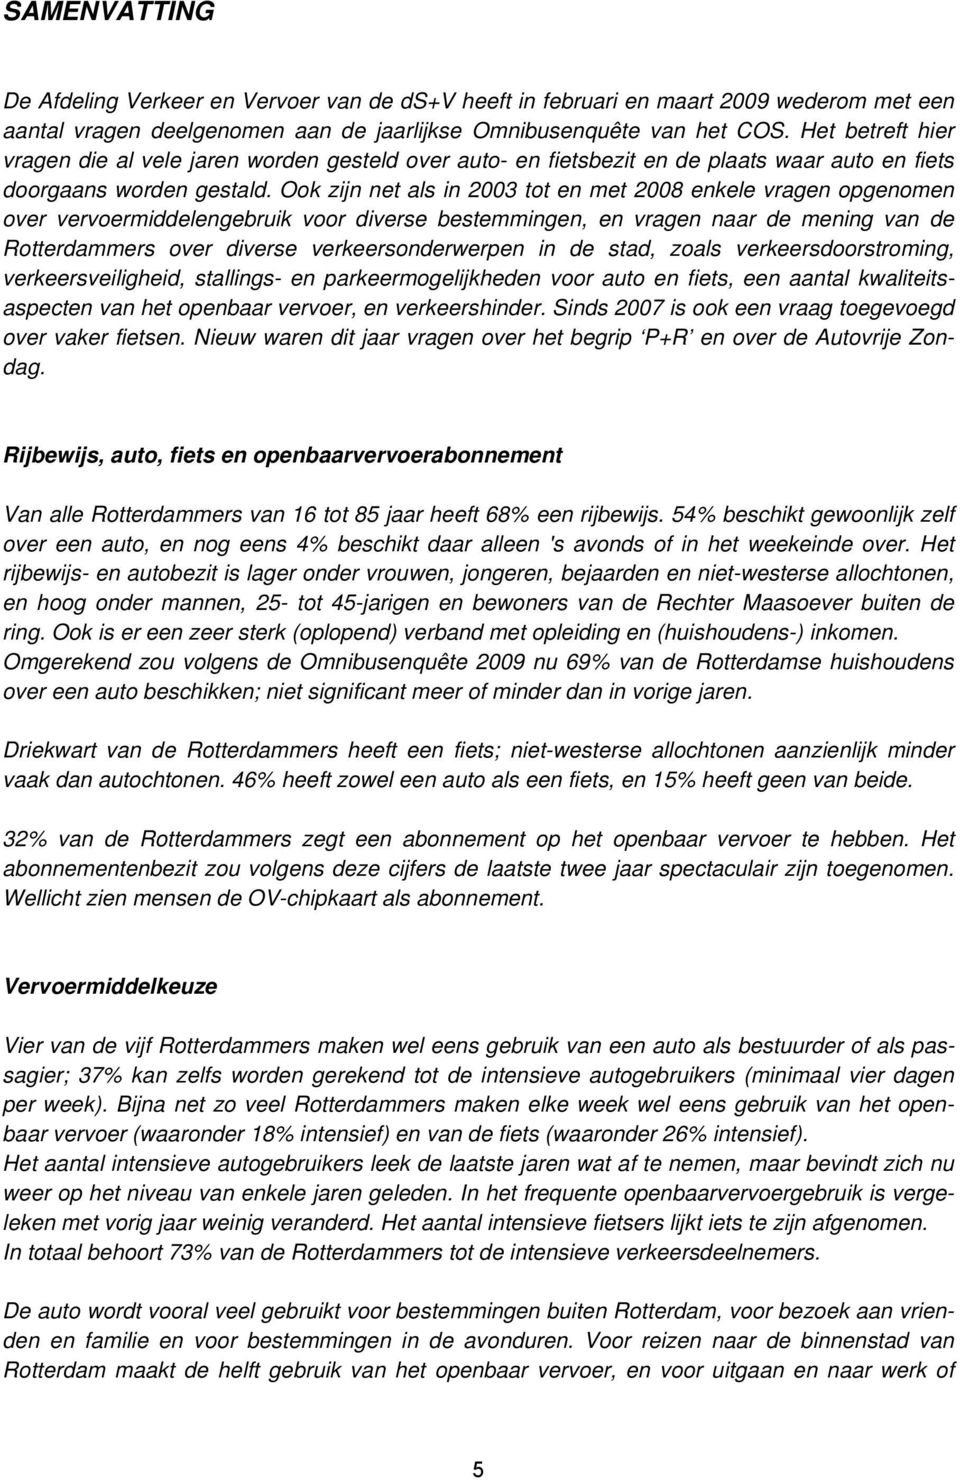 Ook zijn net als in 2003 tot en met 2008 enkele vragen opgenomen over vervoermiddelengebruik voor diverse bestemmingen, en vragen naar de mening van de Rotterdammers over diverse verkeersonderwerpen